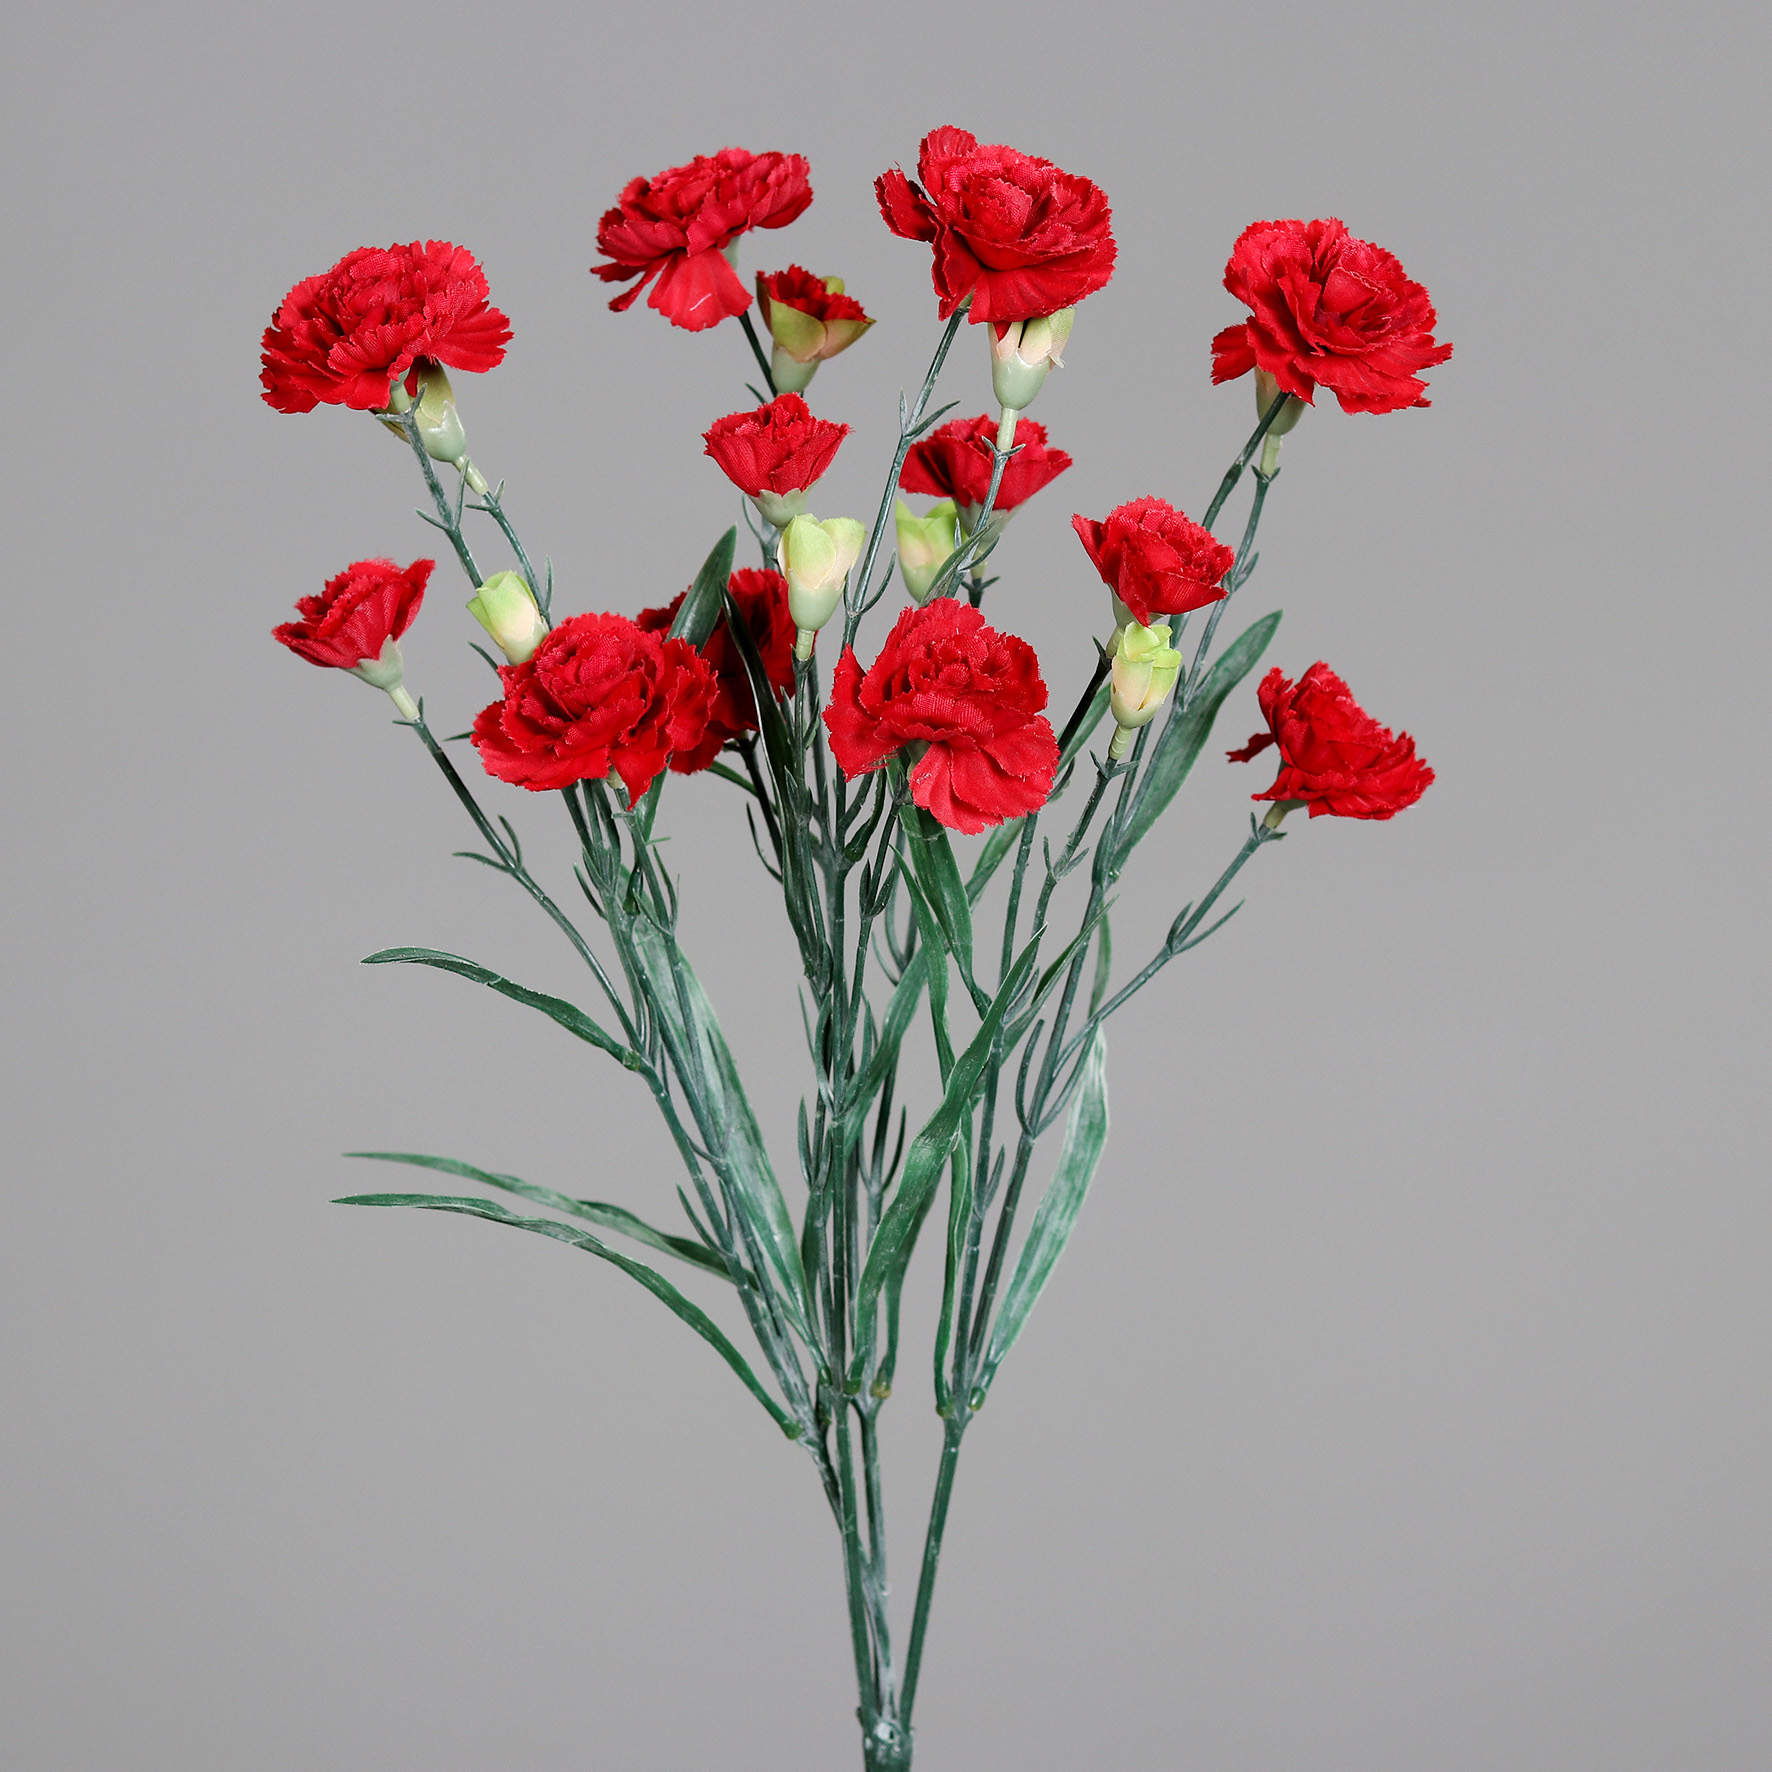 Trossnelkenbusch 50cm rot DP Kunstblumen künstliche Nelke Nelken Trossnelken Blumen